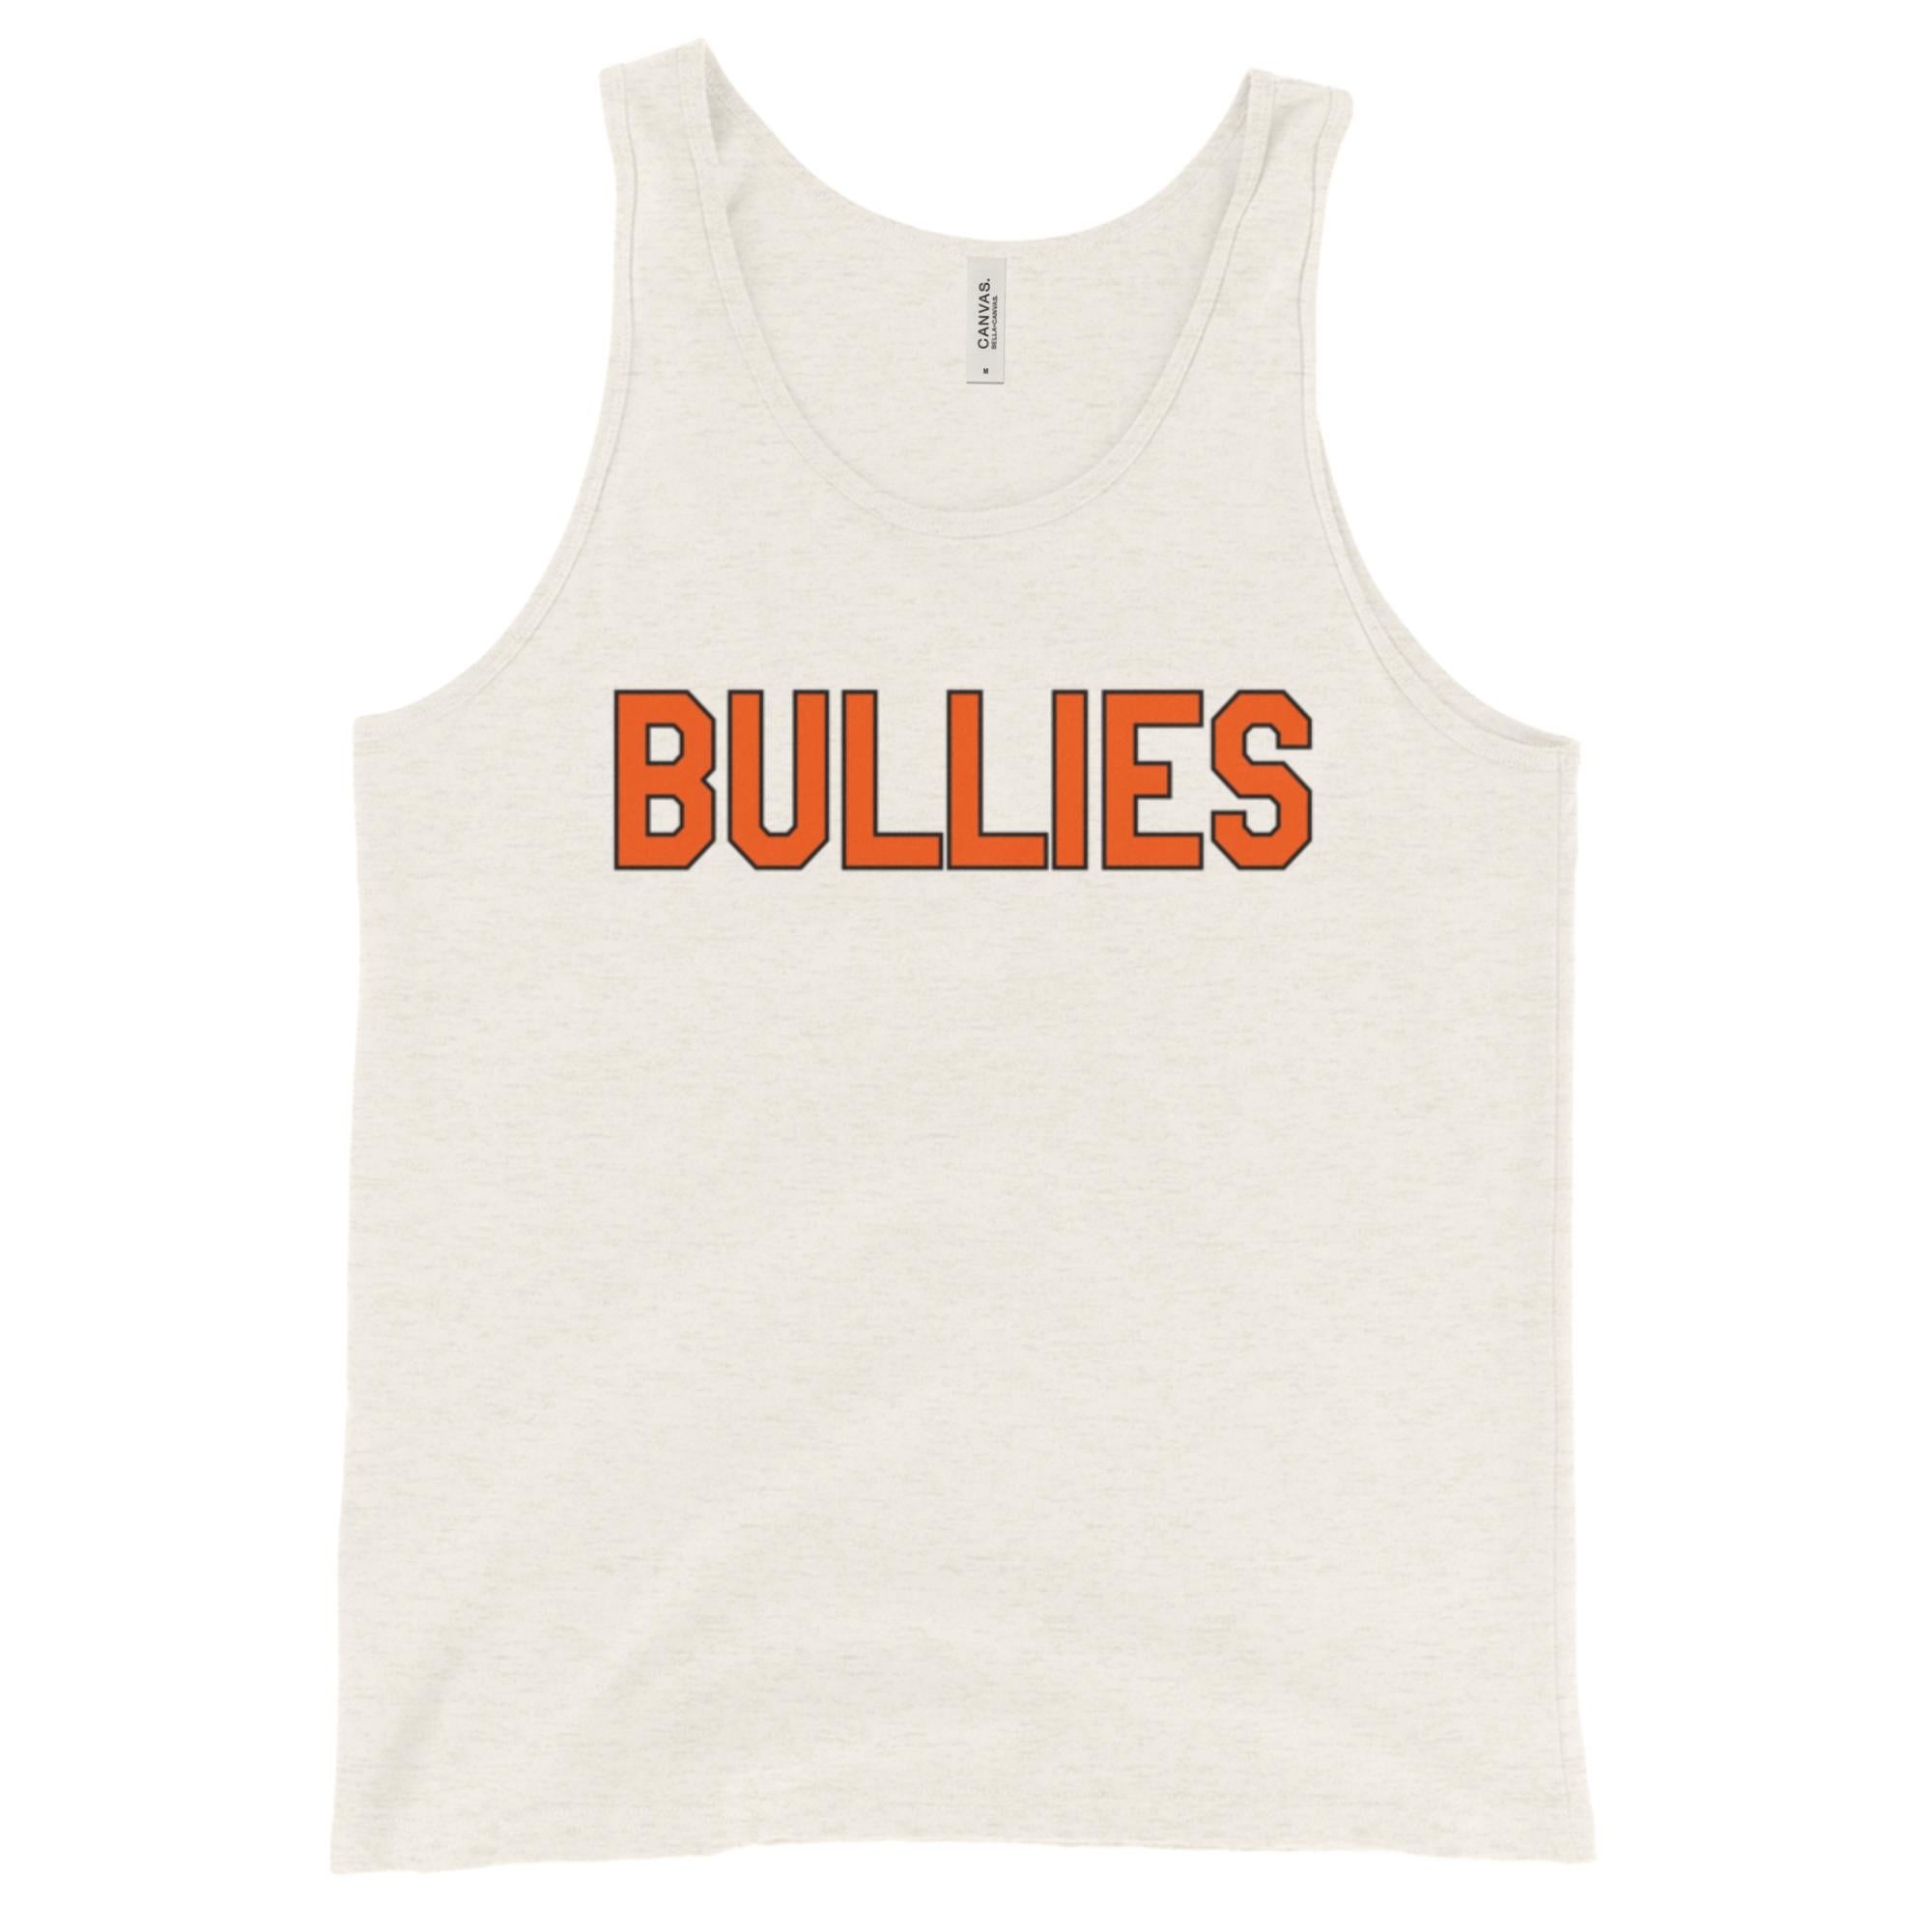 "Bullies" Tank Top